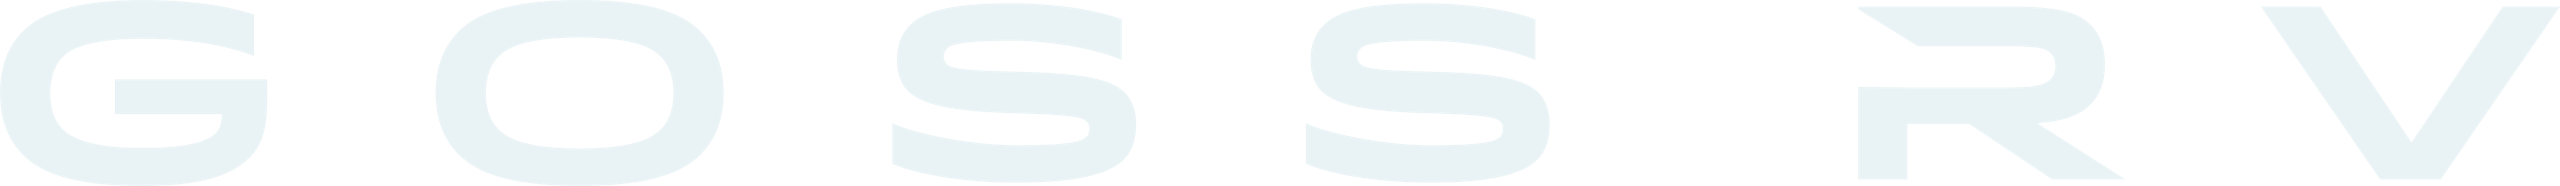 GossRV Logo - Word